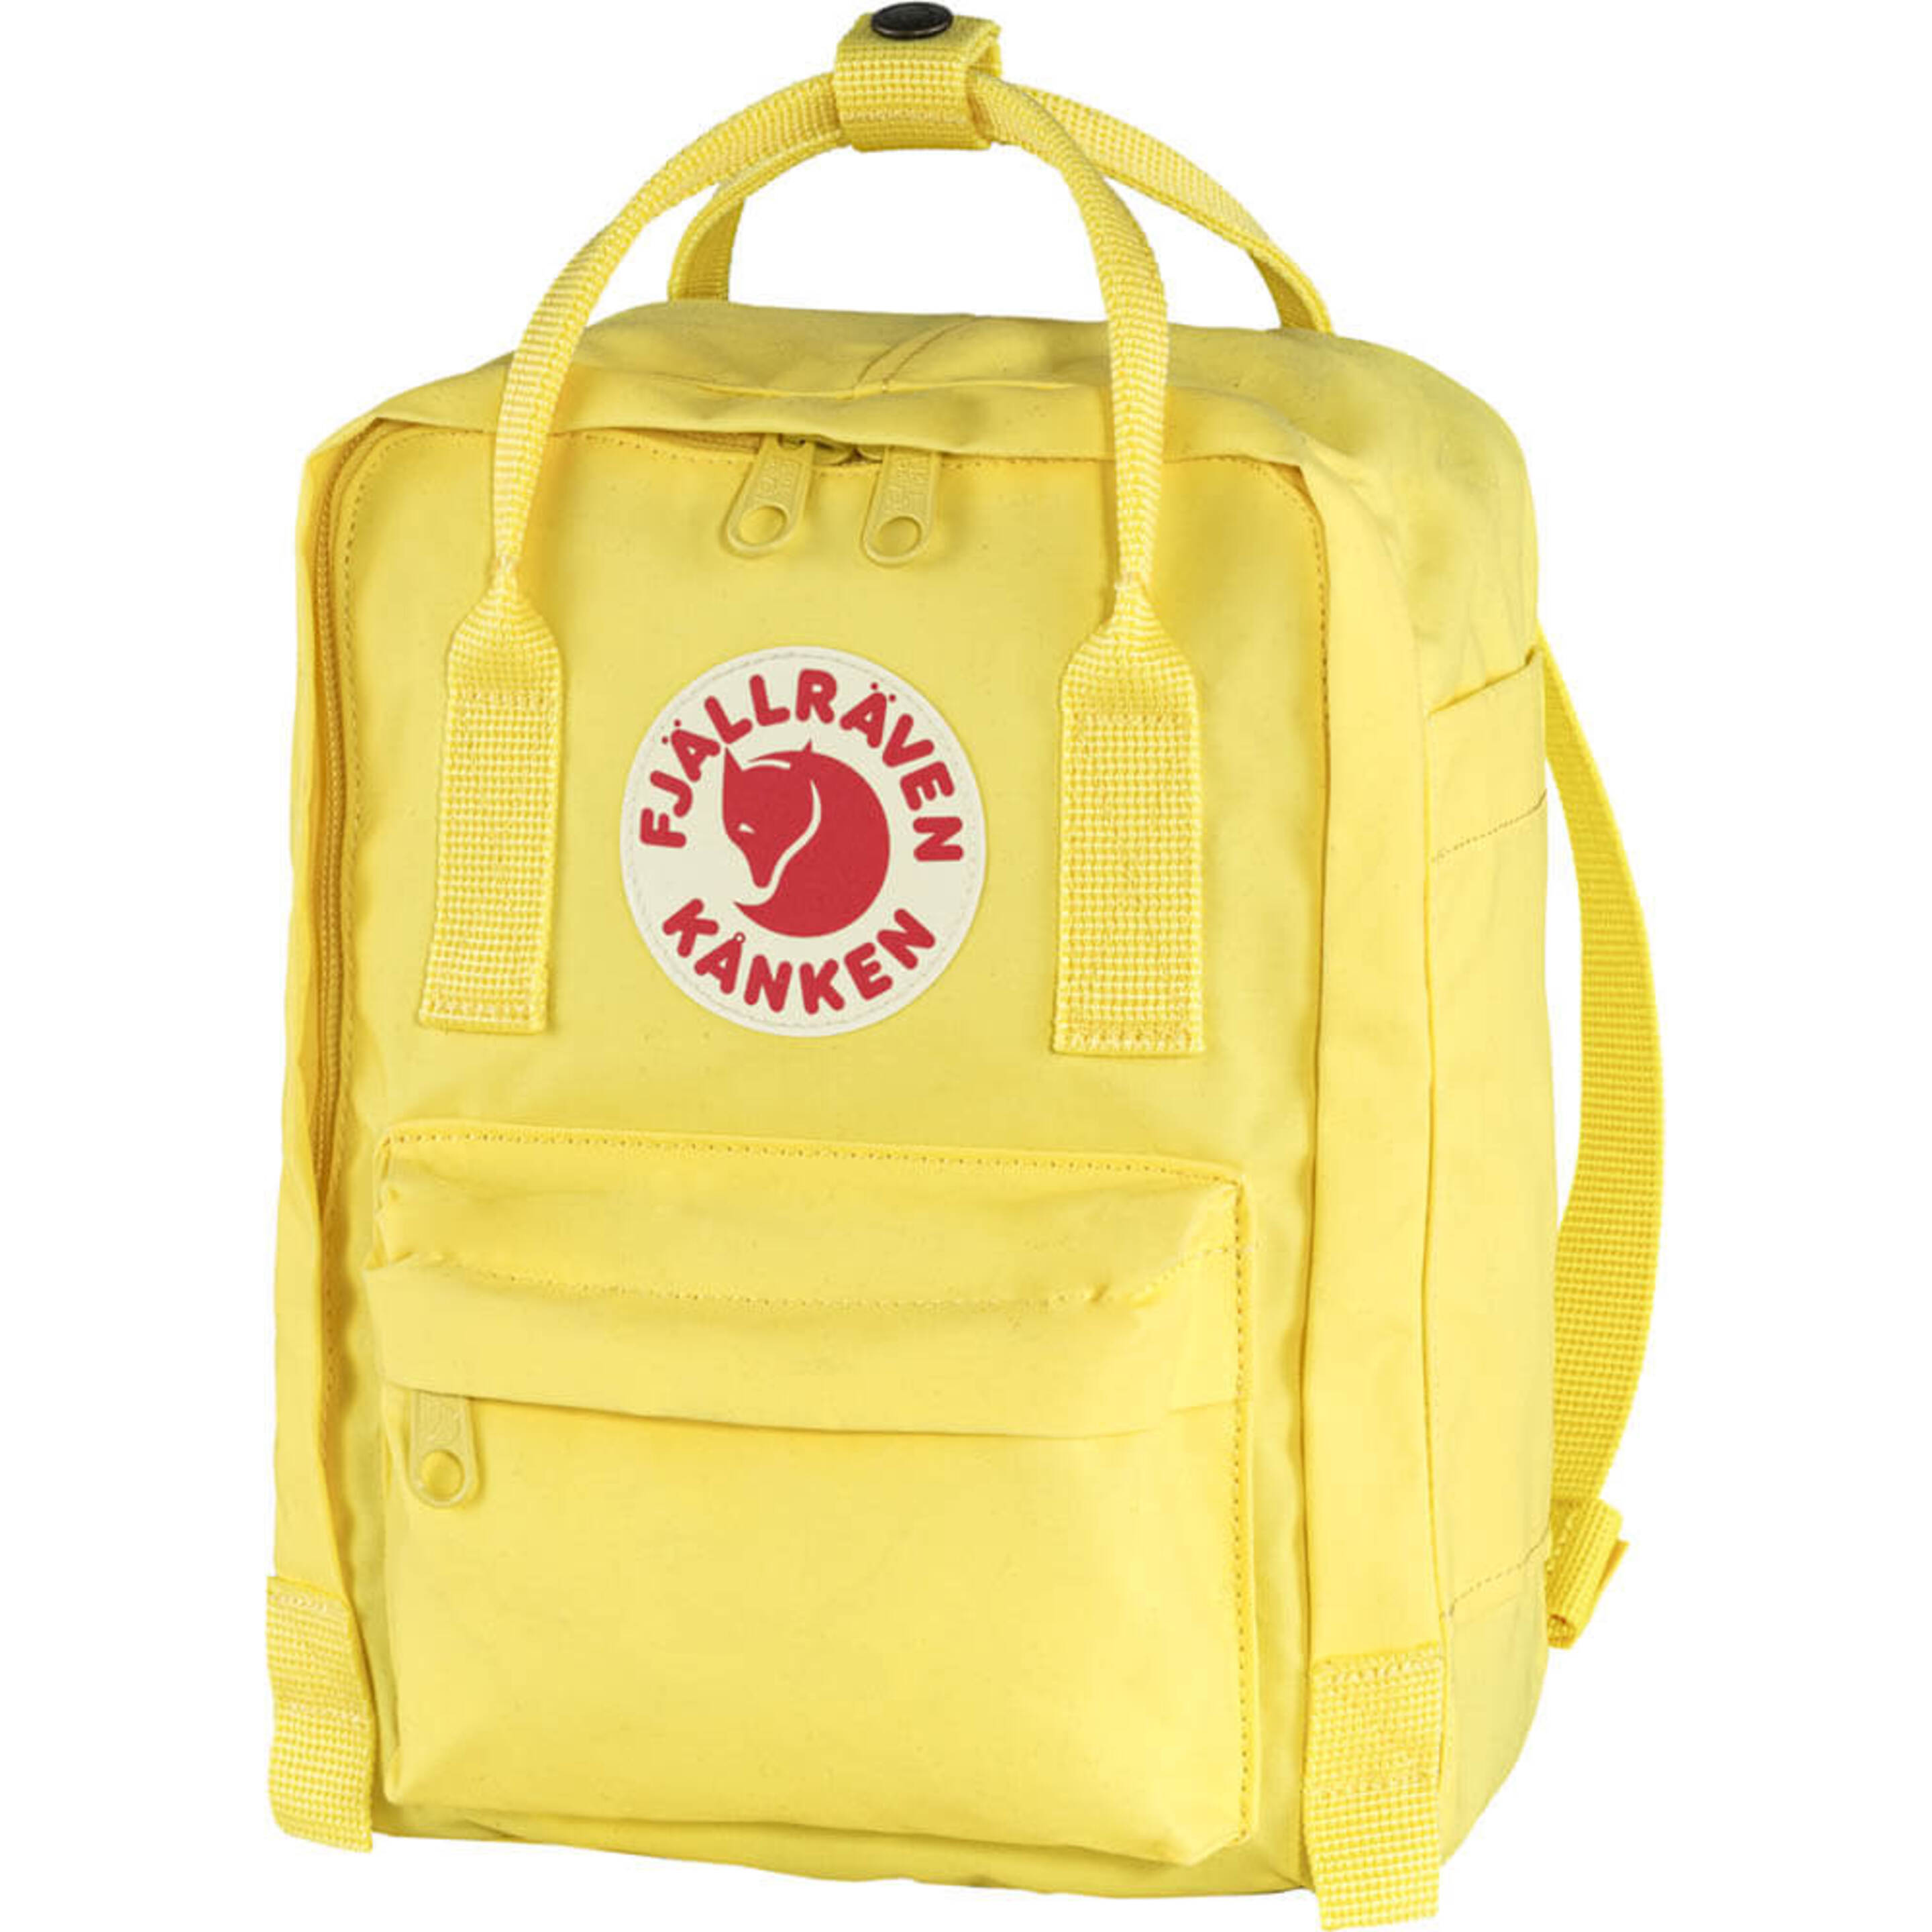 Fjallraven Kanken Sports Backpack, Unisex-adult, Corn, One Size - Multicolor  MKP